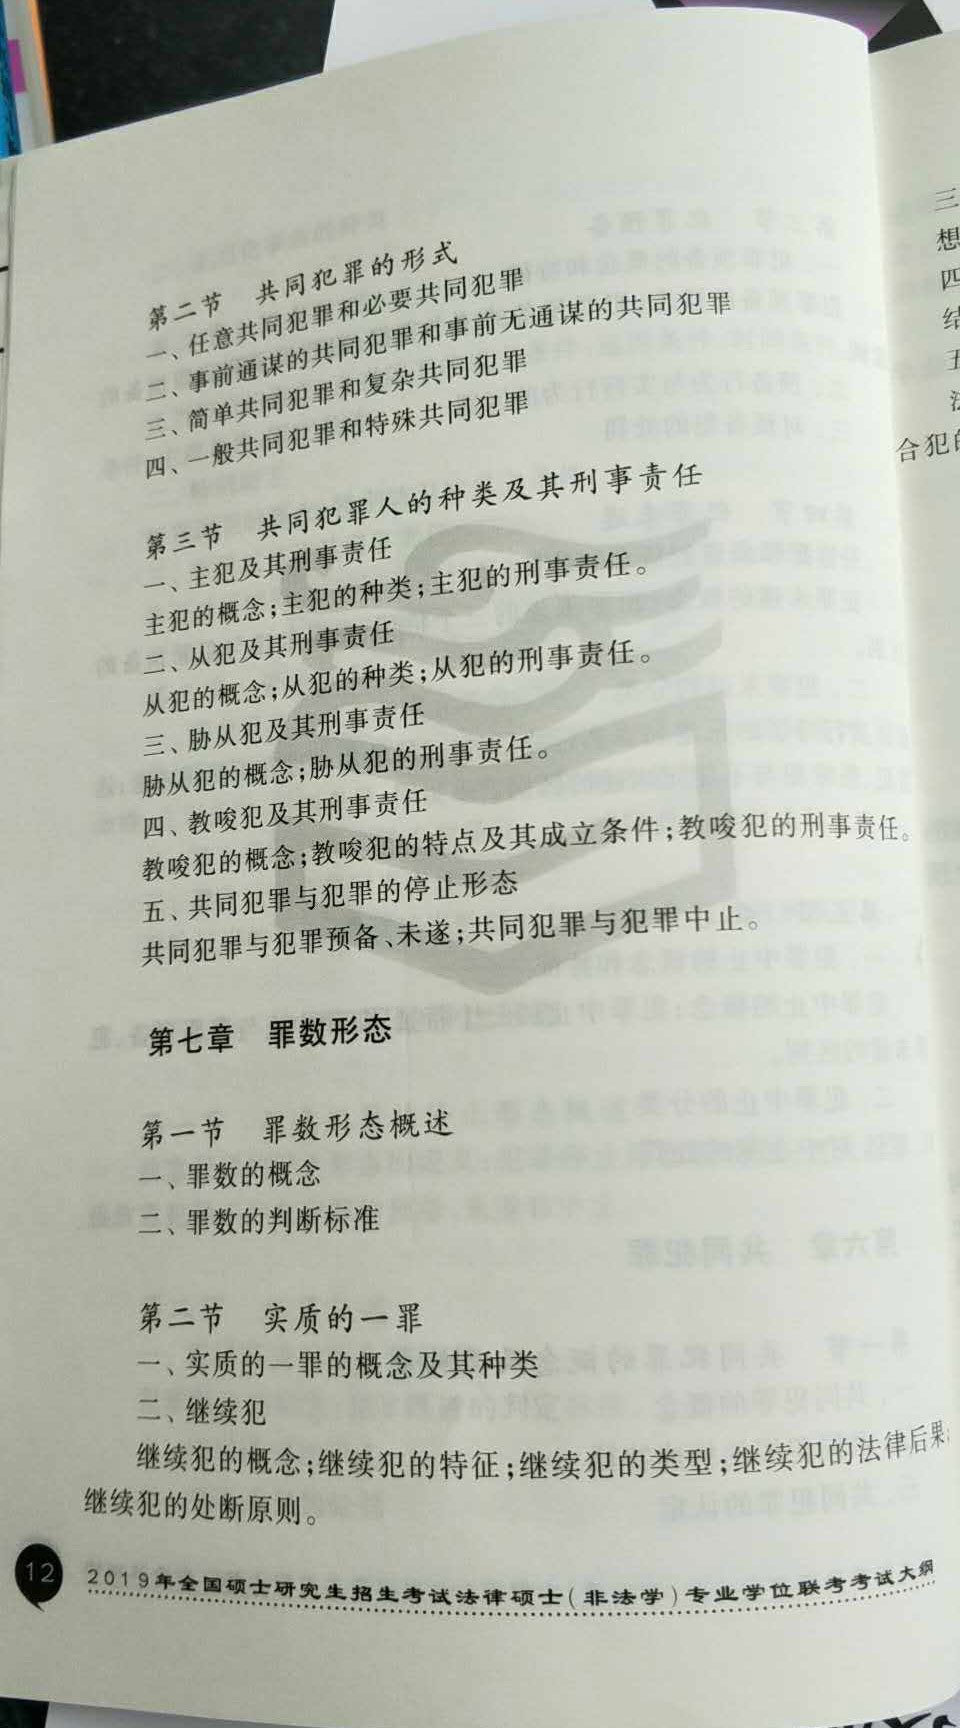 2019考研法律碩士(非法學)大綱原文:刑法學